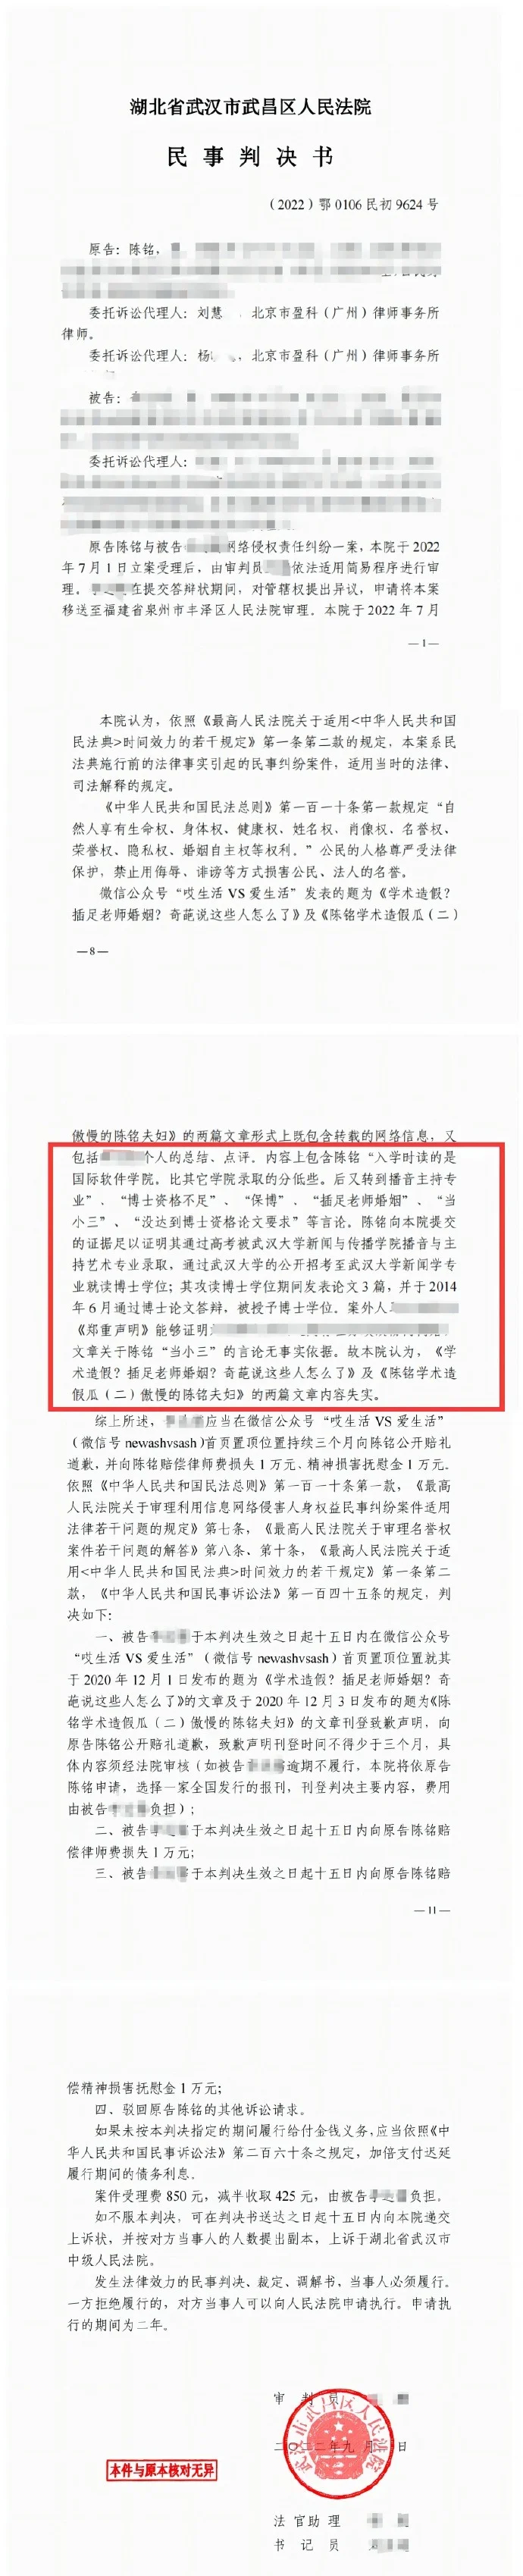 陳銘發文回應論文爭議 澄清網上所查部分並非學術論文